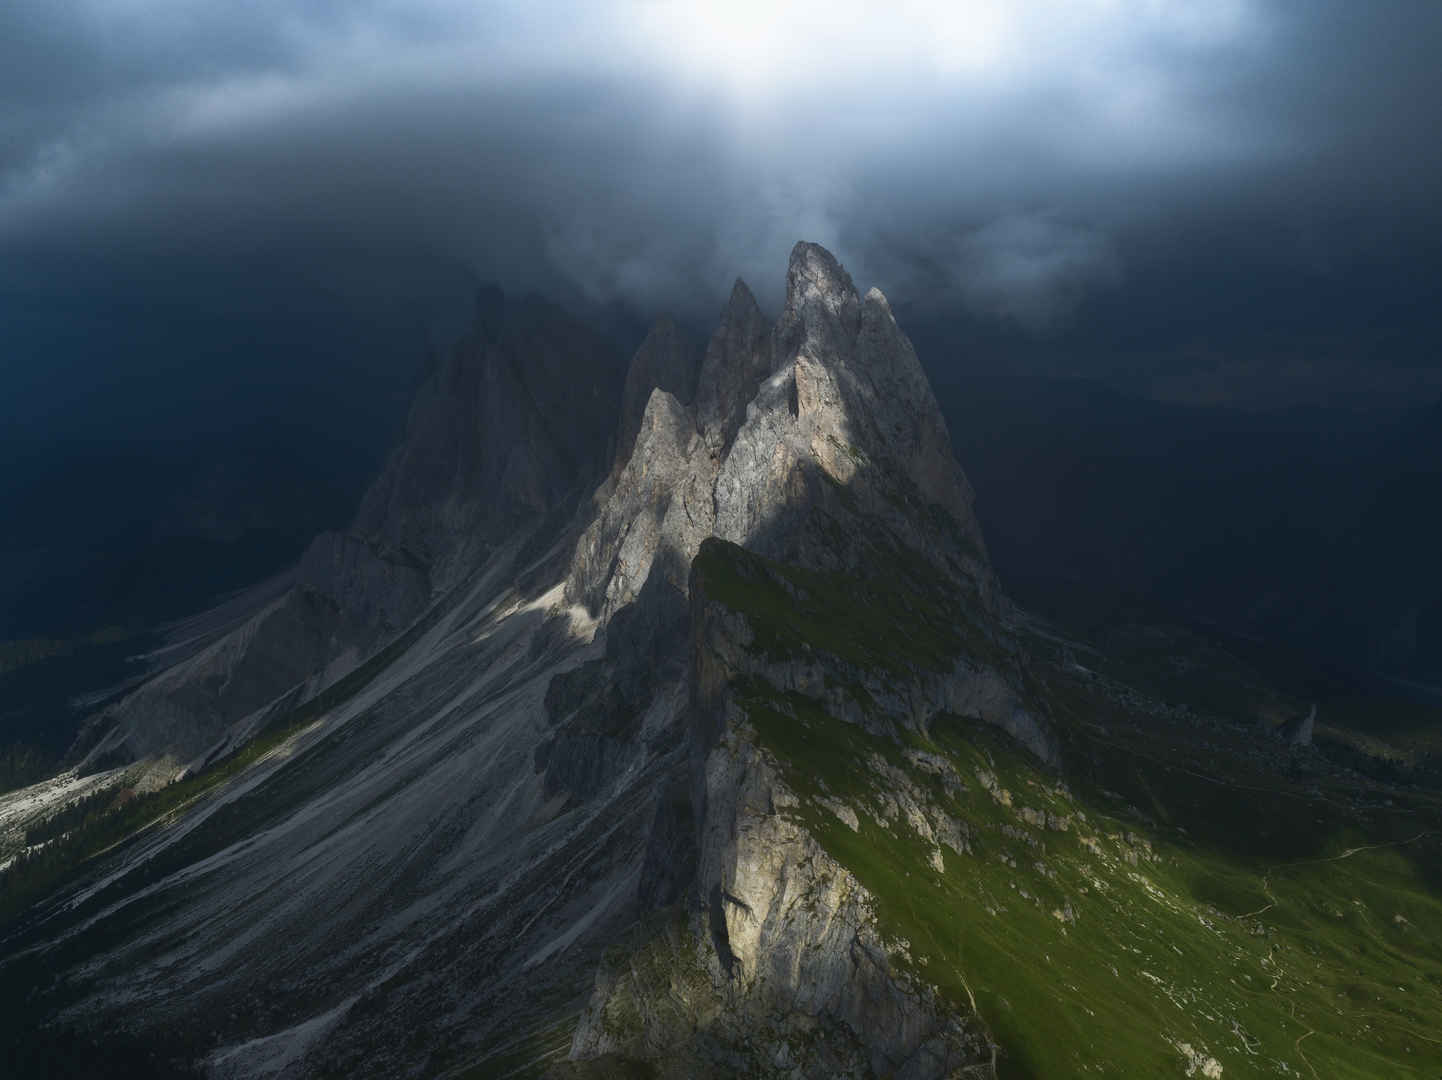 阿尔卑斯山风景壁纸